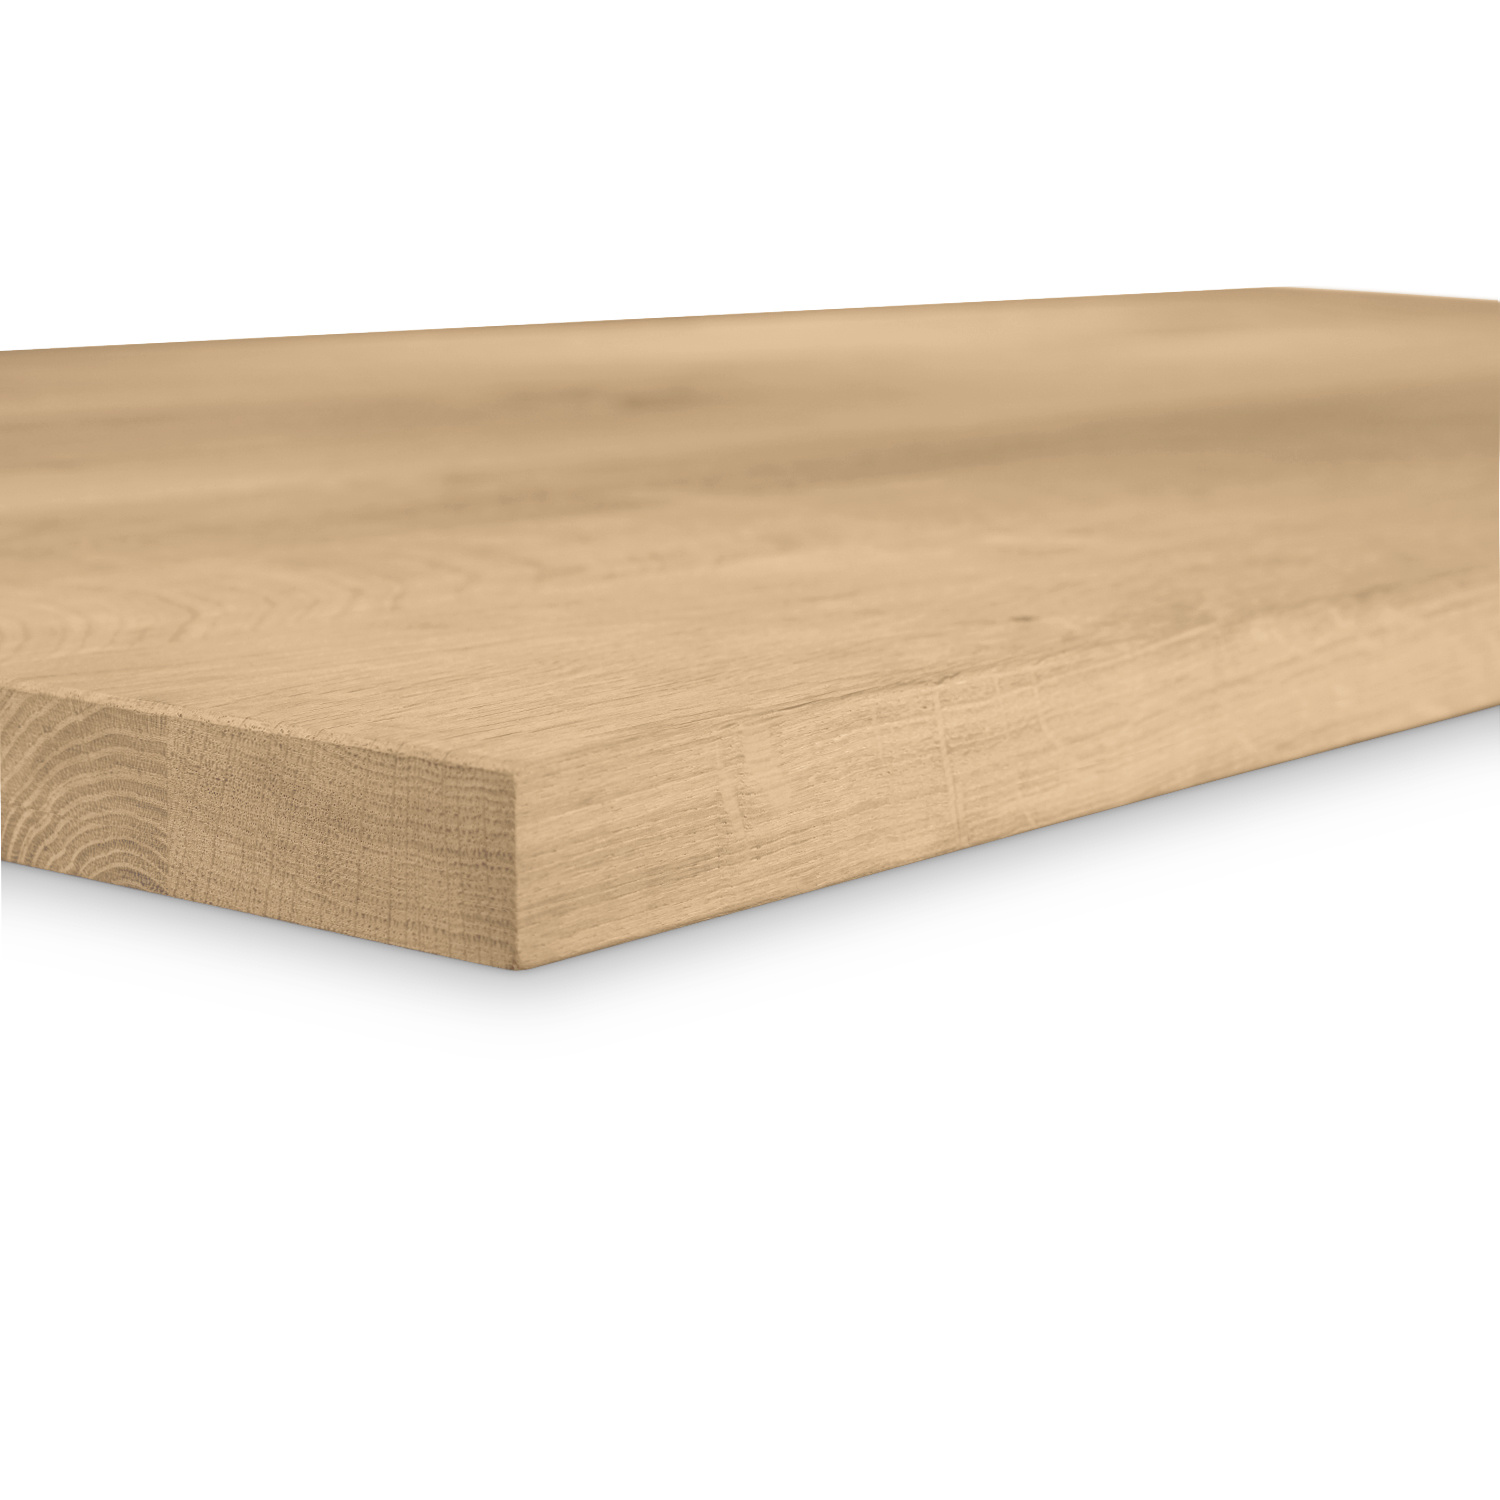  Eiken tafelblad - 2,7 cm dik (1-laag) - Diverse afmetingen - rustiek Europees eikenhout - met brede lamellen (circa 10-12 cm) - verlijmd kd 8-12%